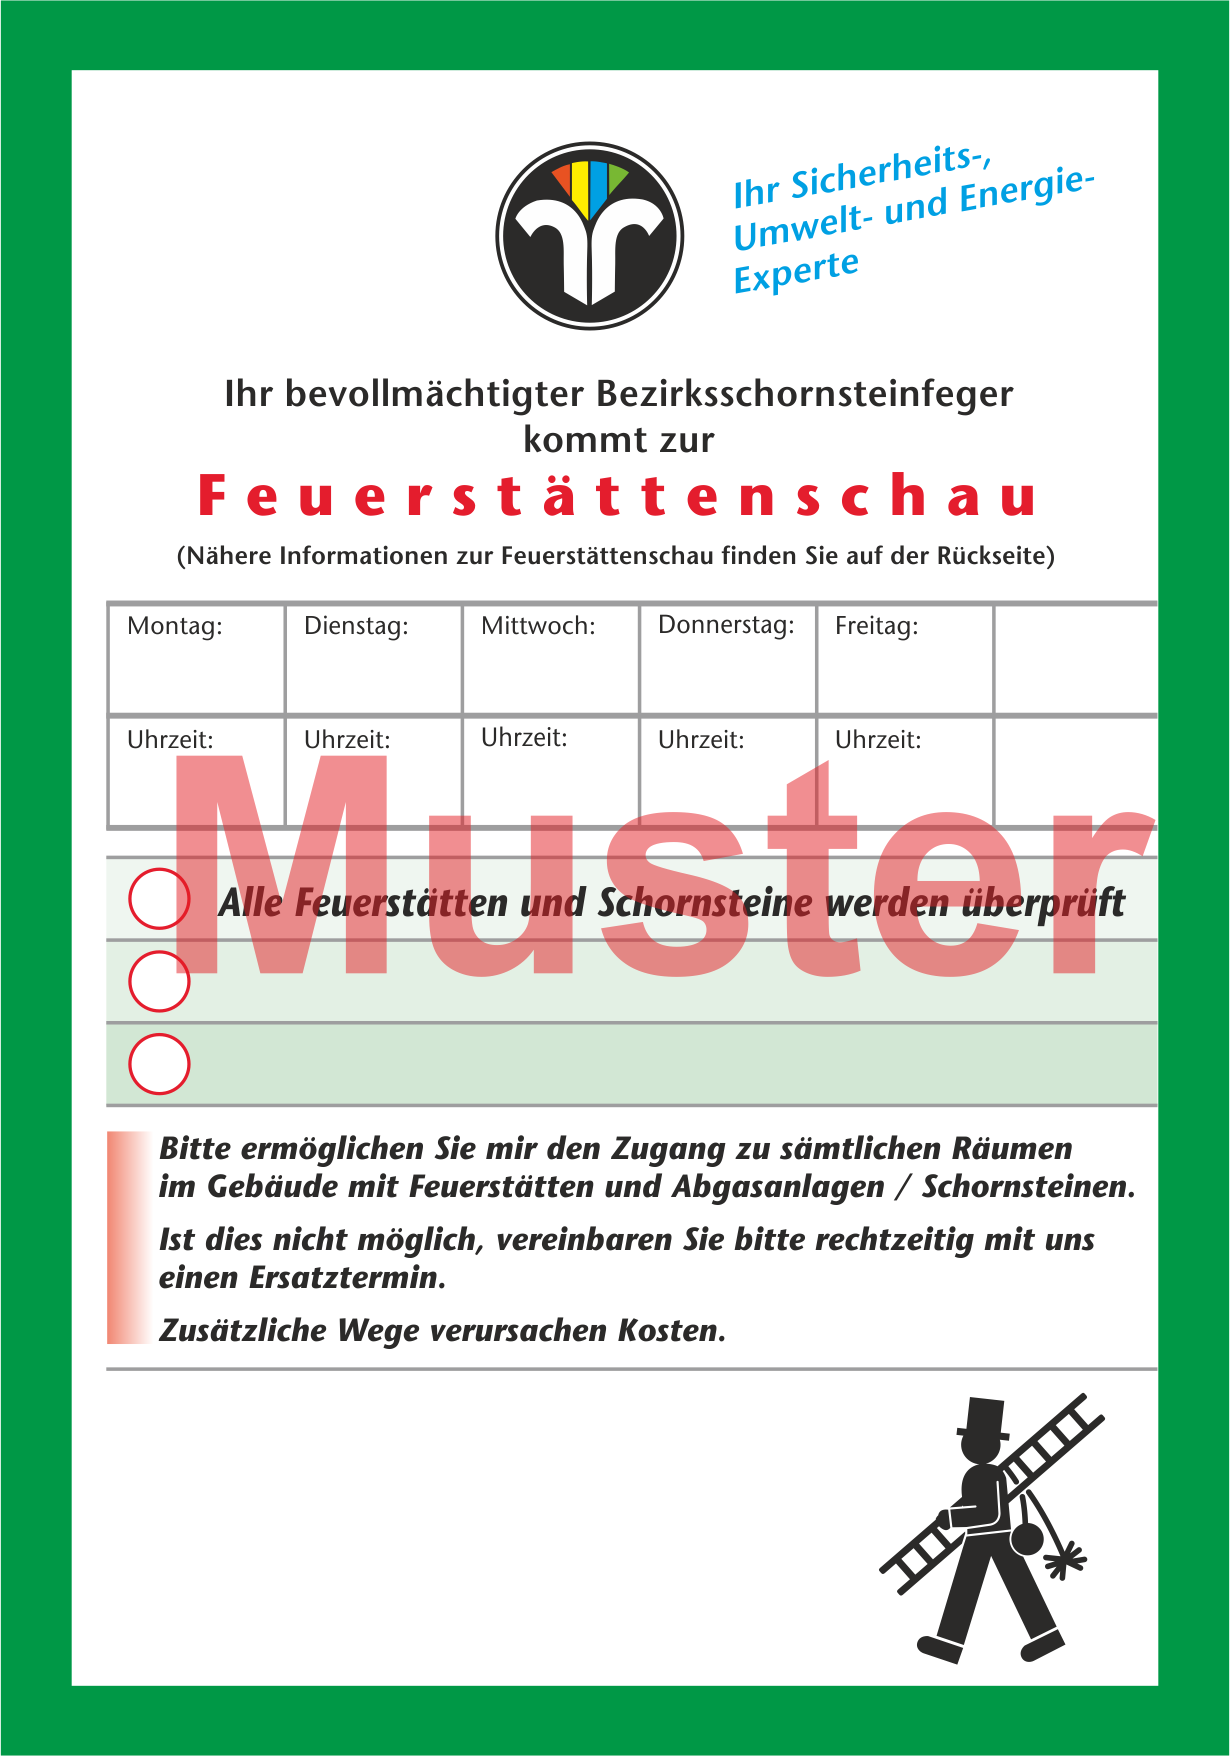 Ansagezettel "Feuerstättenschau", DIN A6, ZIV-Logo